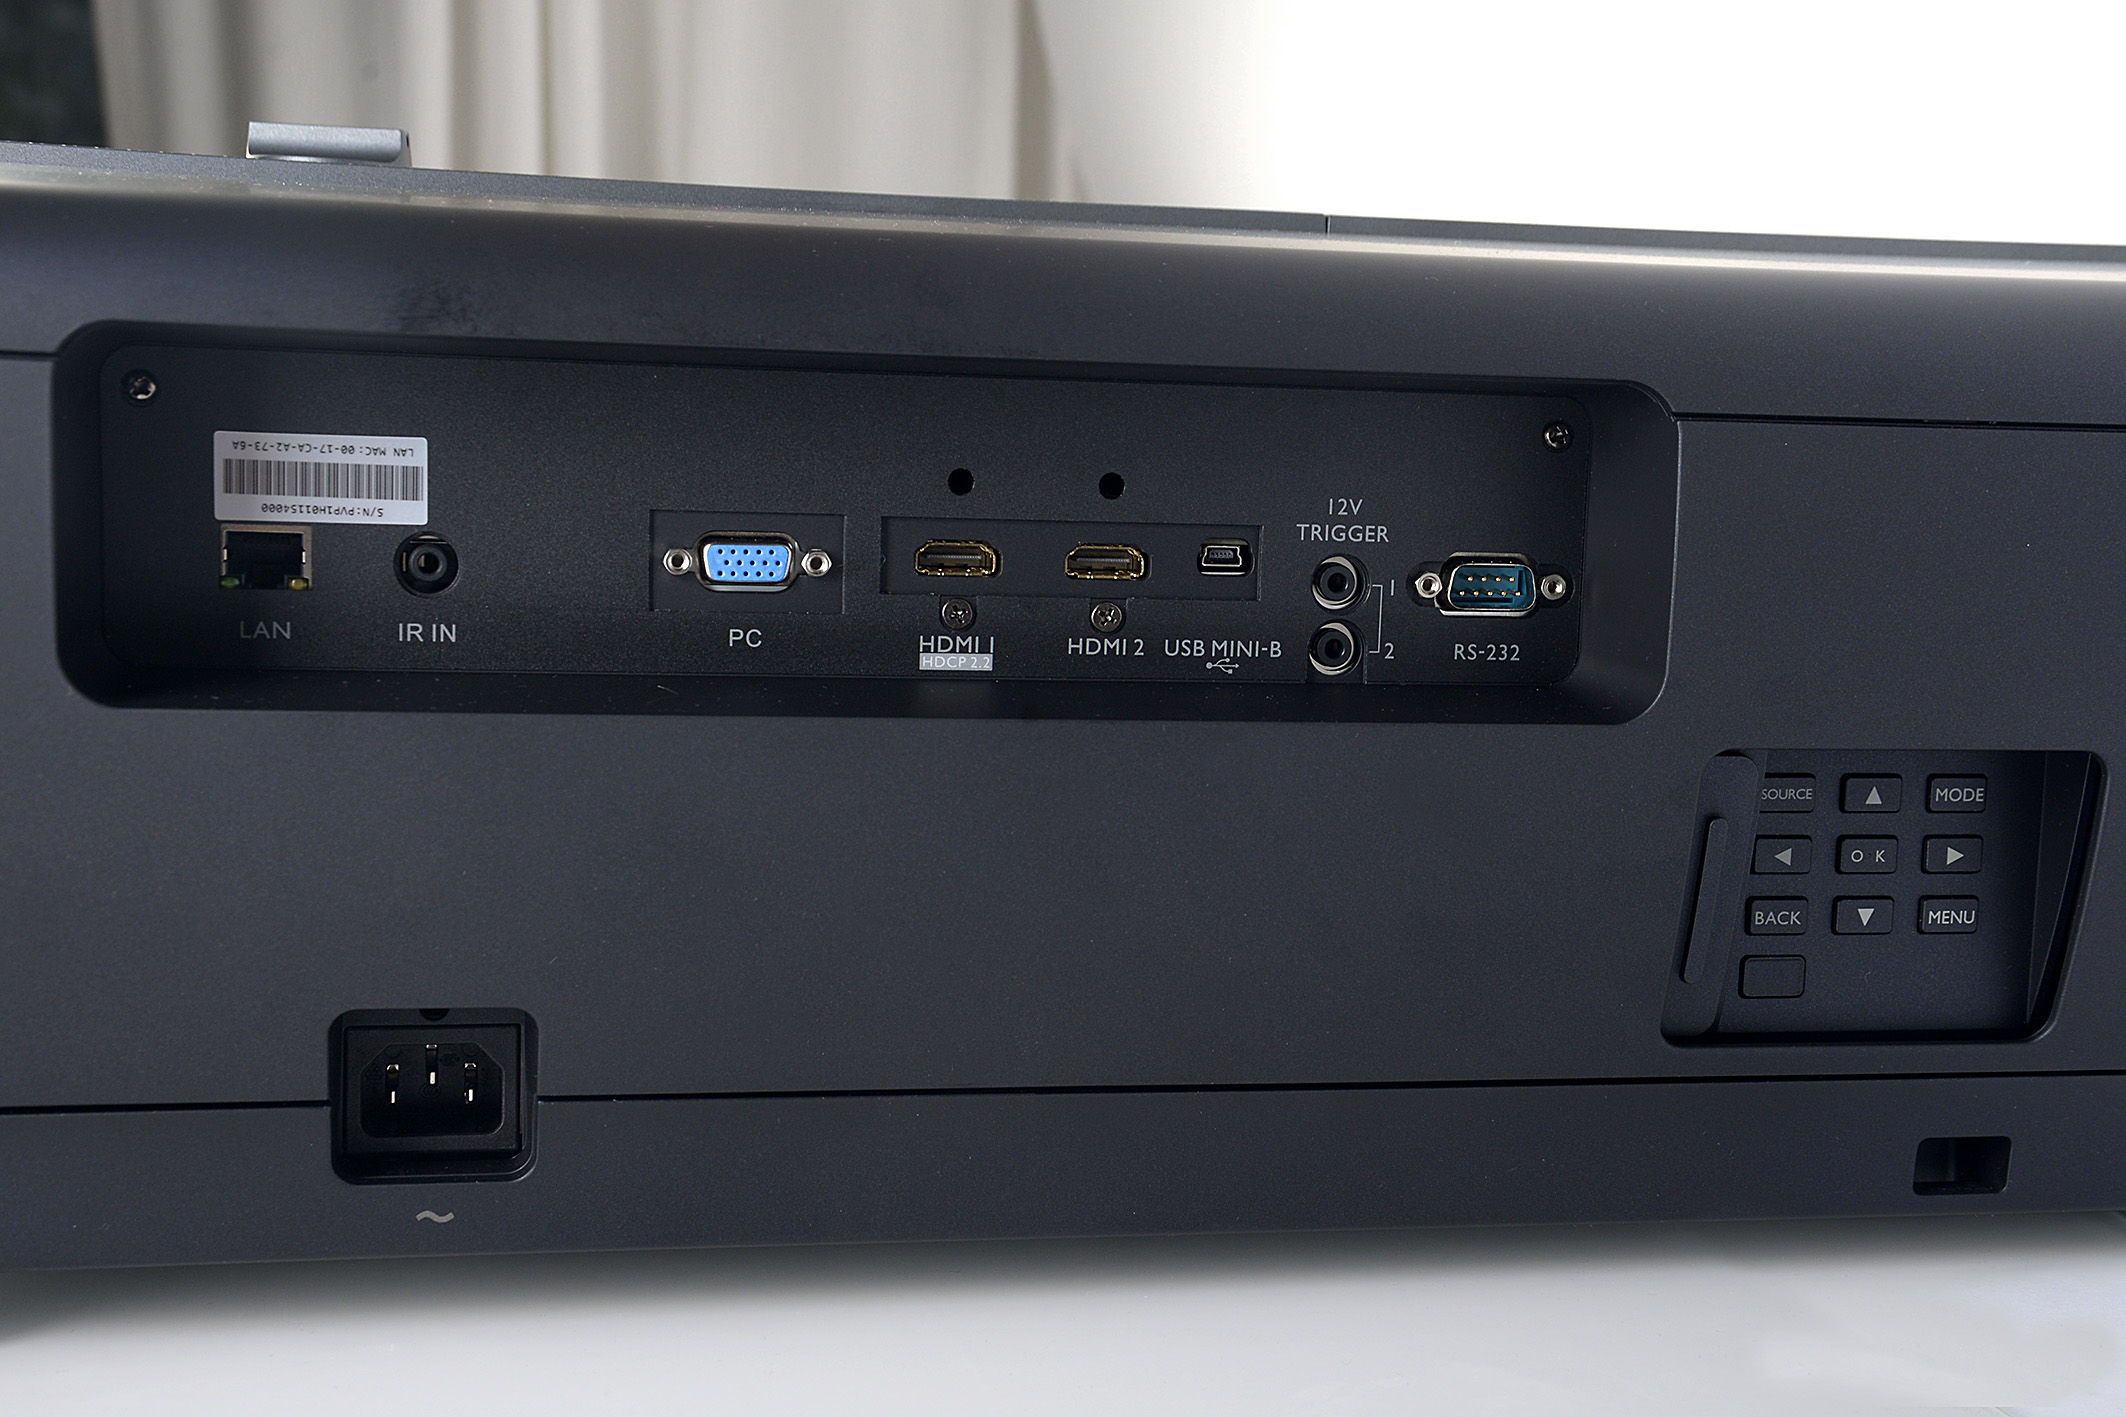 Foto: Michael B. Rehders Die Anschlüsse des BenQ X12000 befinden sich allesamt auf der linken Geräteseite. Zwei HDMI-Schnittstellen sind vorhanden, von denen eine HDMI 2.0 und HDCP 2.2 unterstützt. Somit können gleichzeitig eine Sat-Box und ein 4K-Blu-ray-Player mit dem BenQ verbunden werden.